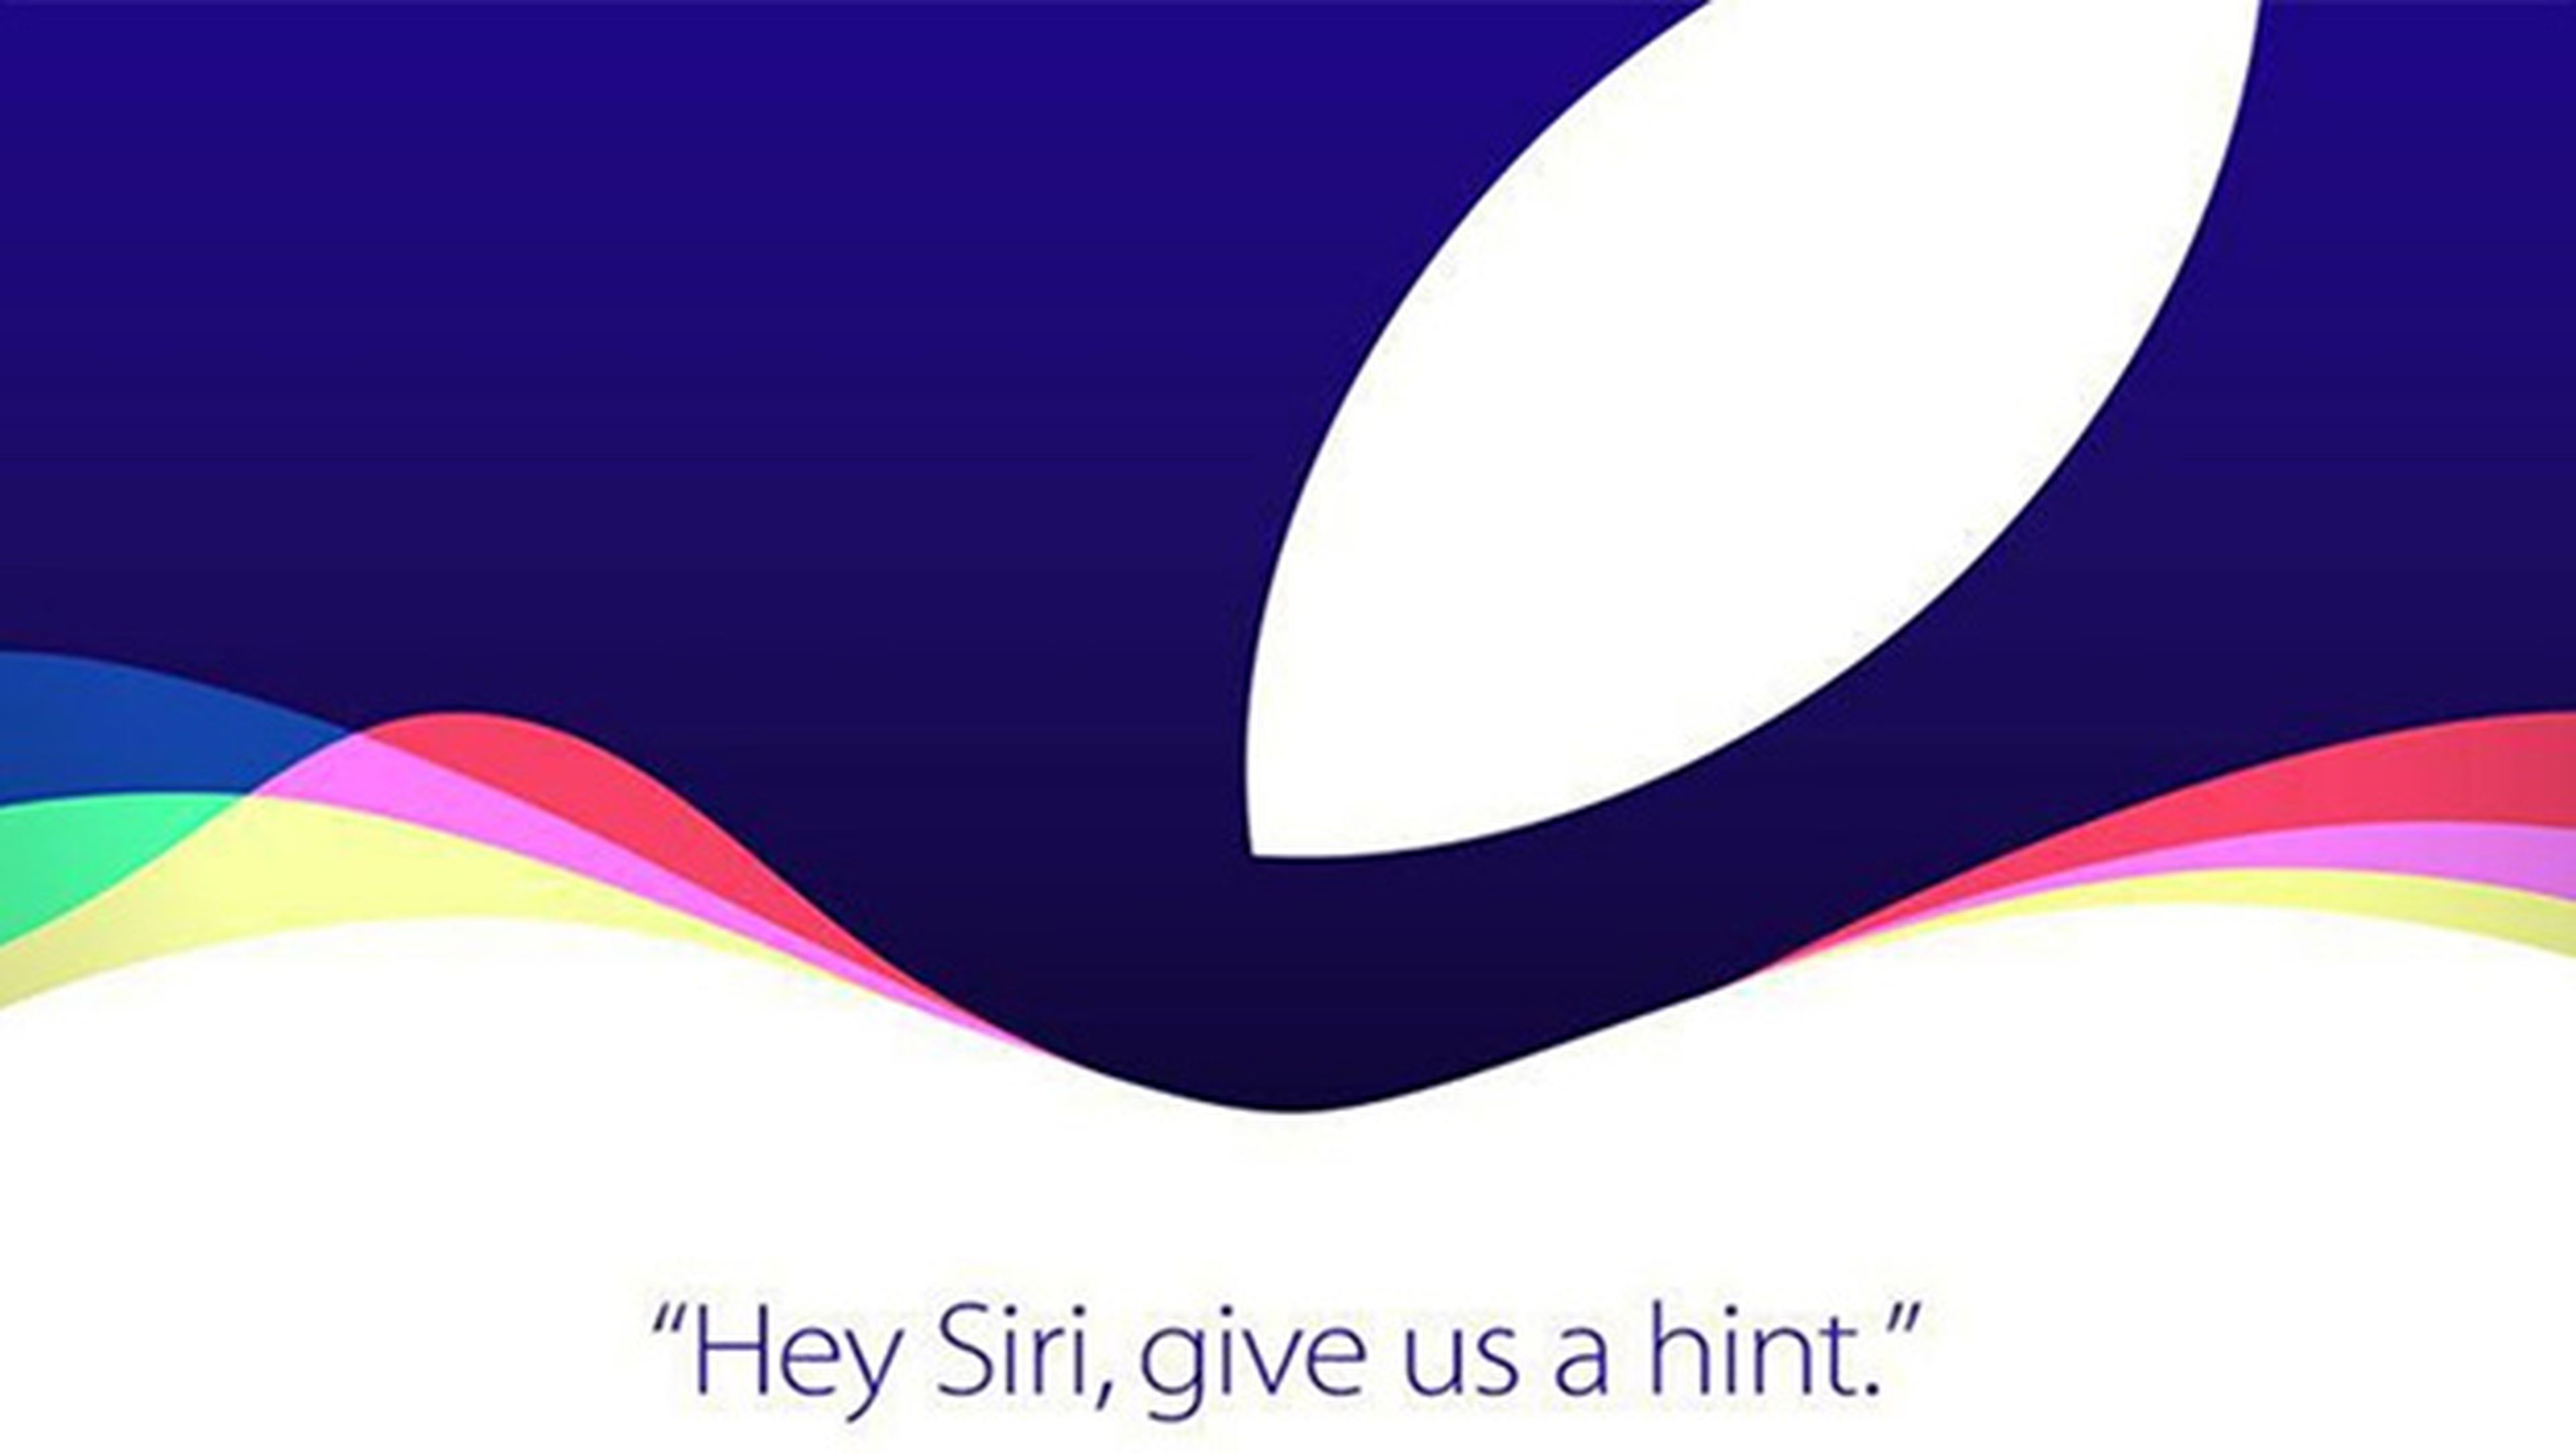 Todo lo que esperamos de la keynote de Apple: iPhone 6S y demás